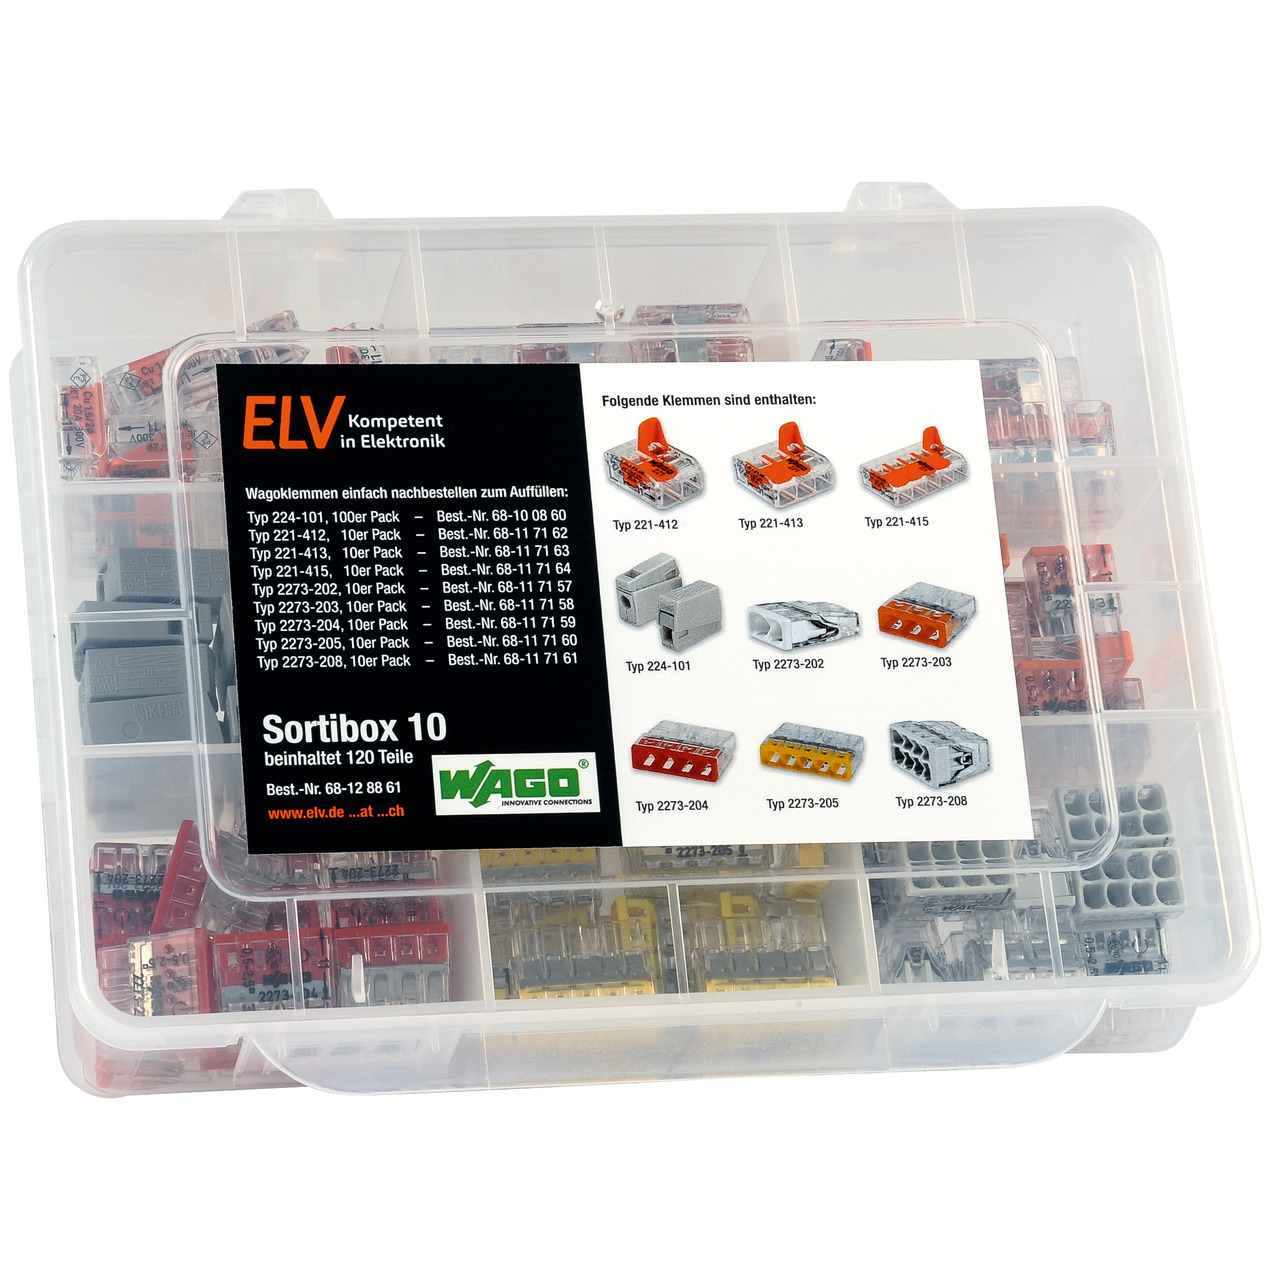 ELV Wago-Sortimentsbox Nr- 10 mit 120 Wago-Klemmen unter Haustechnik